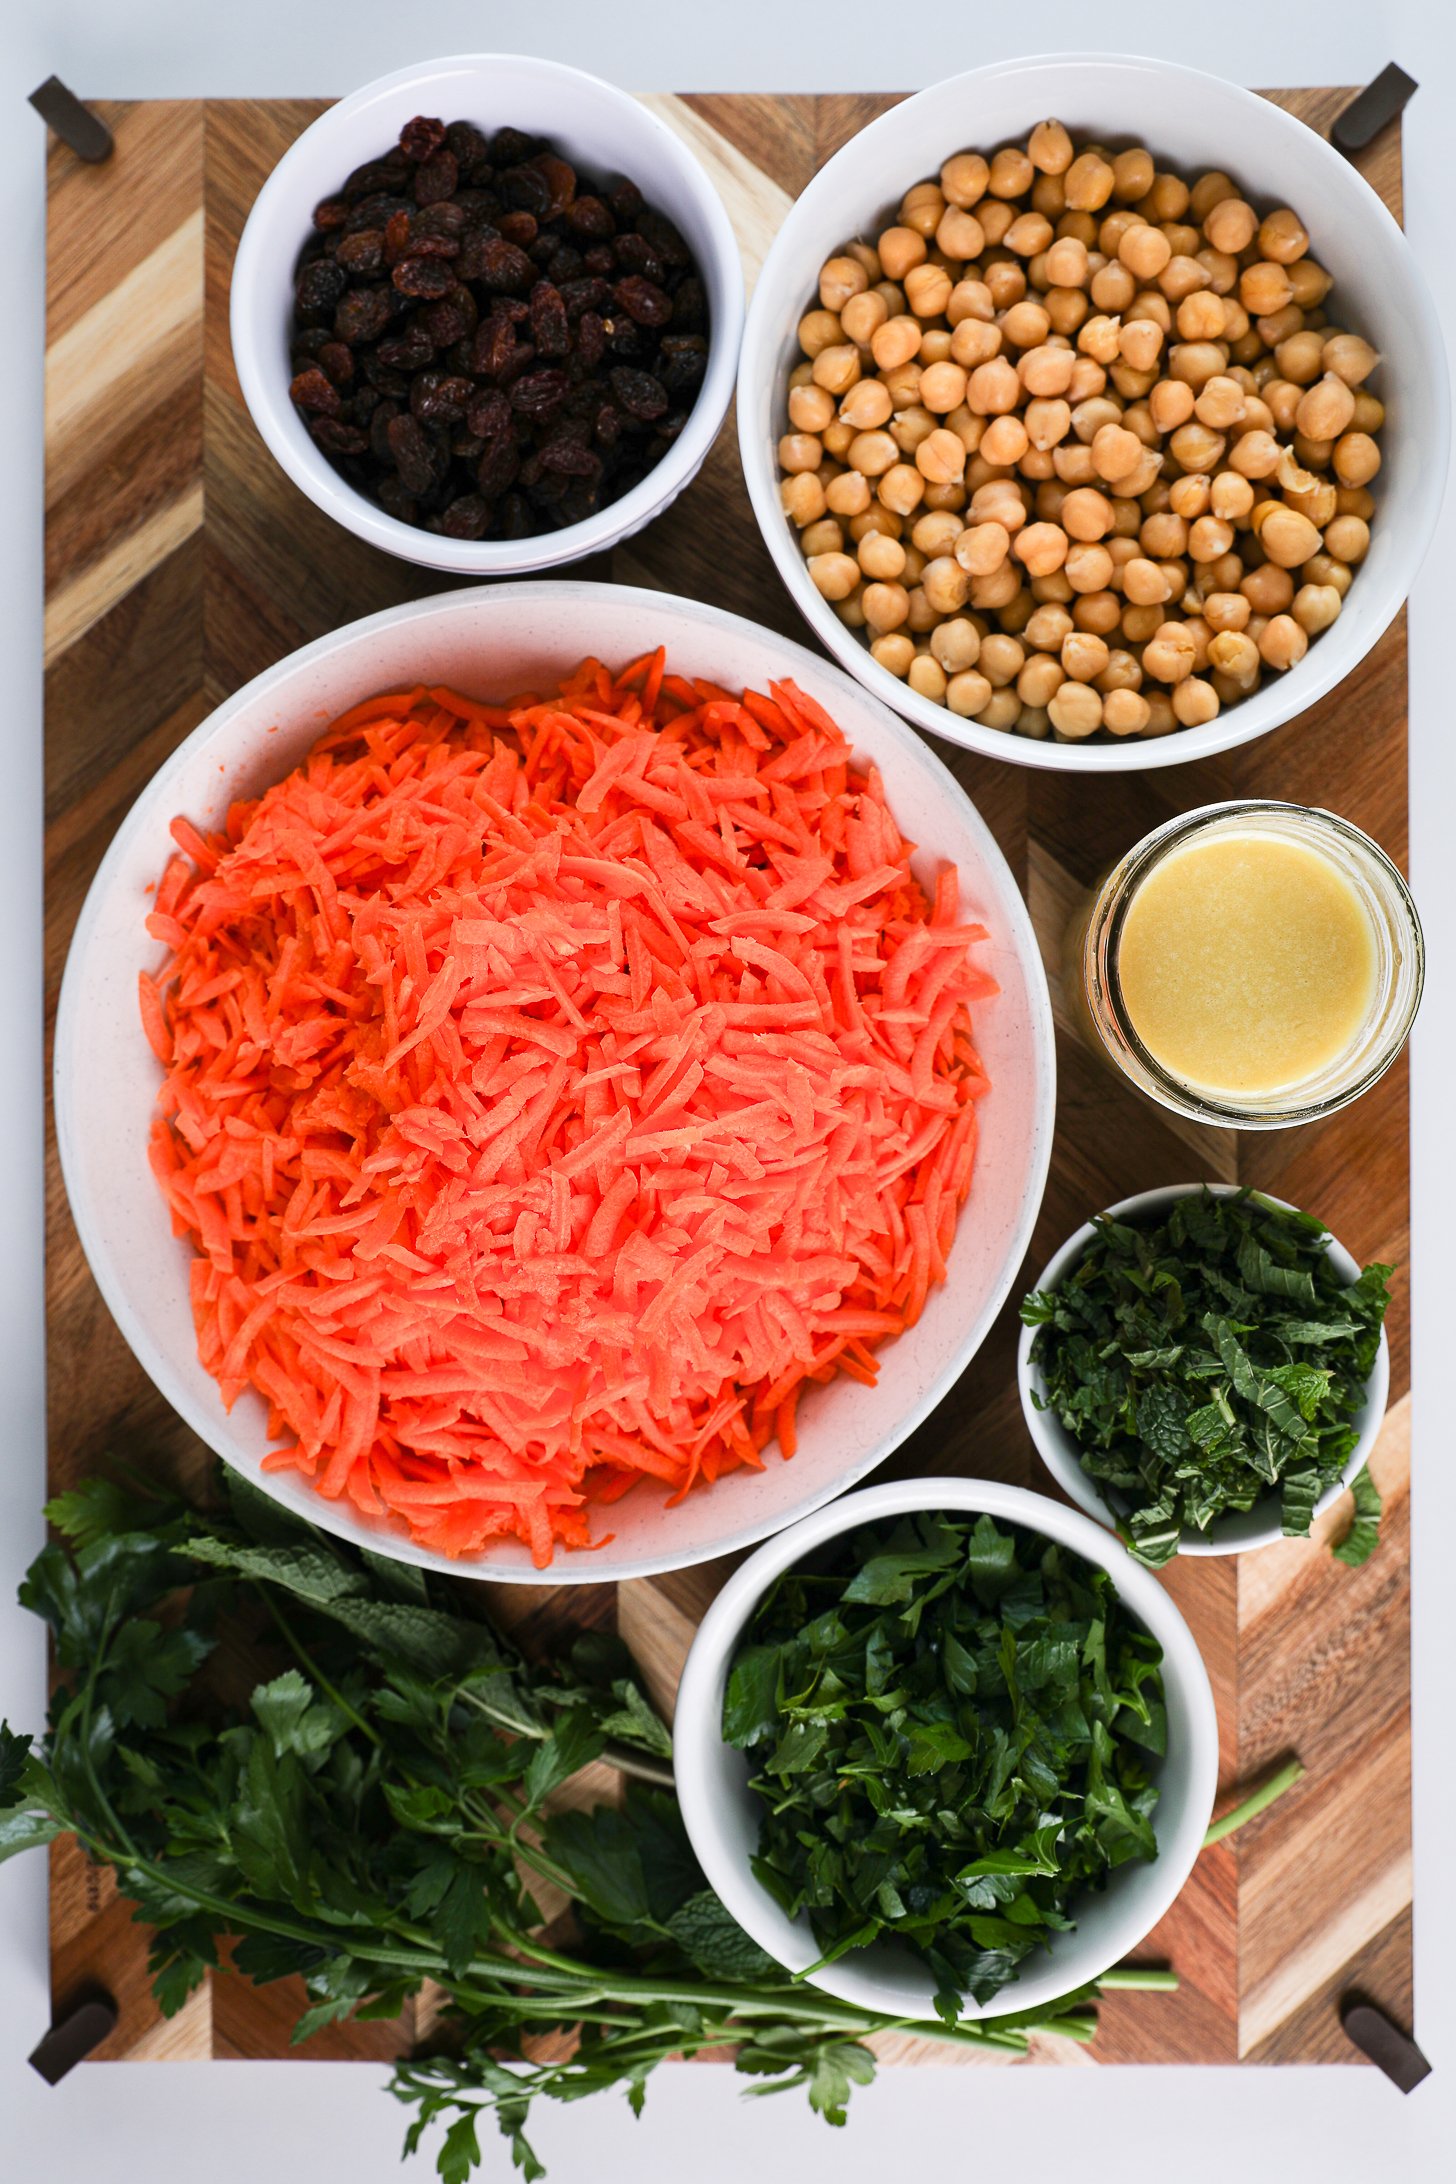 مجموعه ای از مواد غذایی مانند هویج رنده شده، نخود، کشمش، سبزیجات تازه و سس.